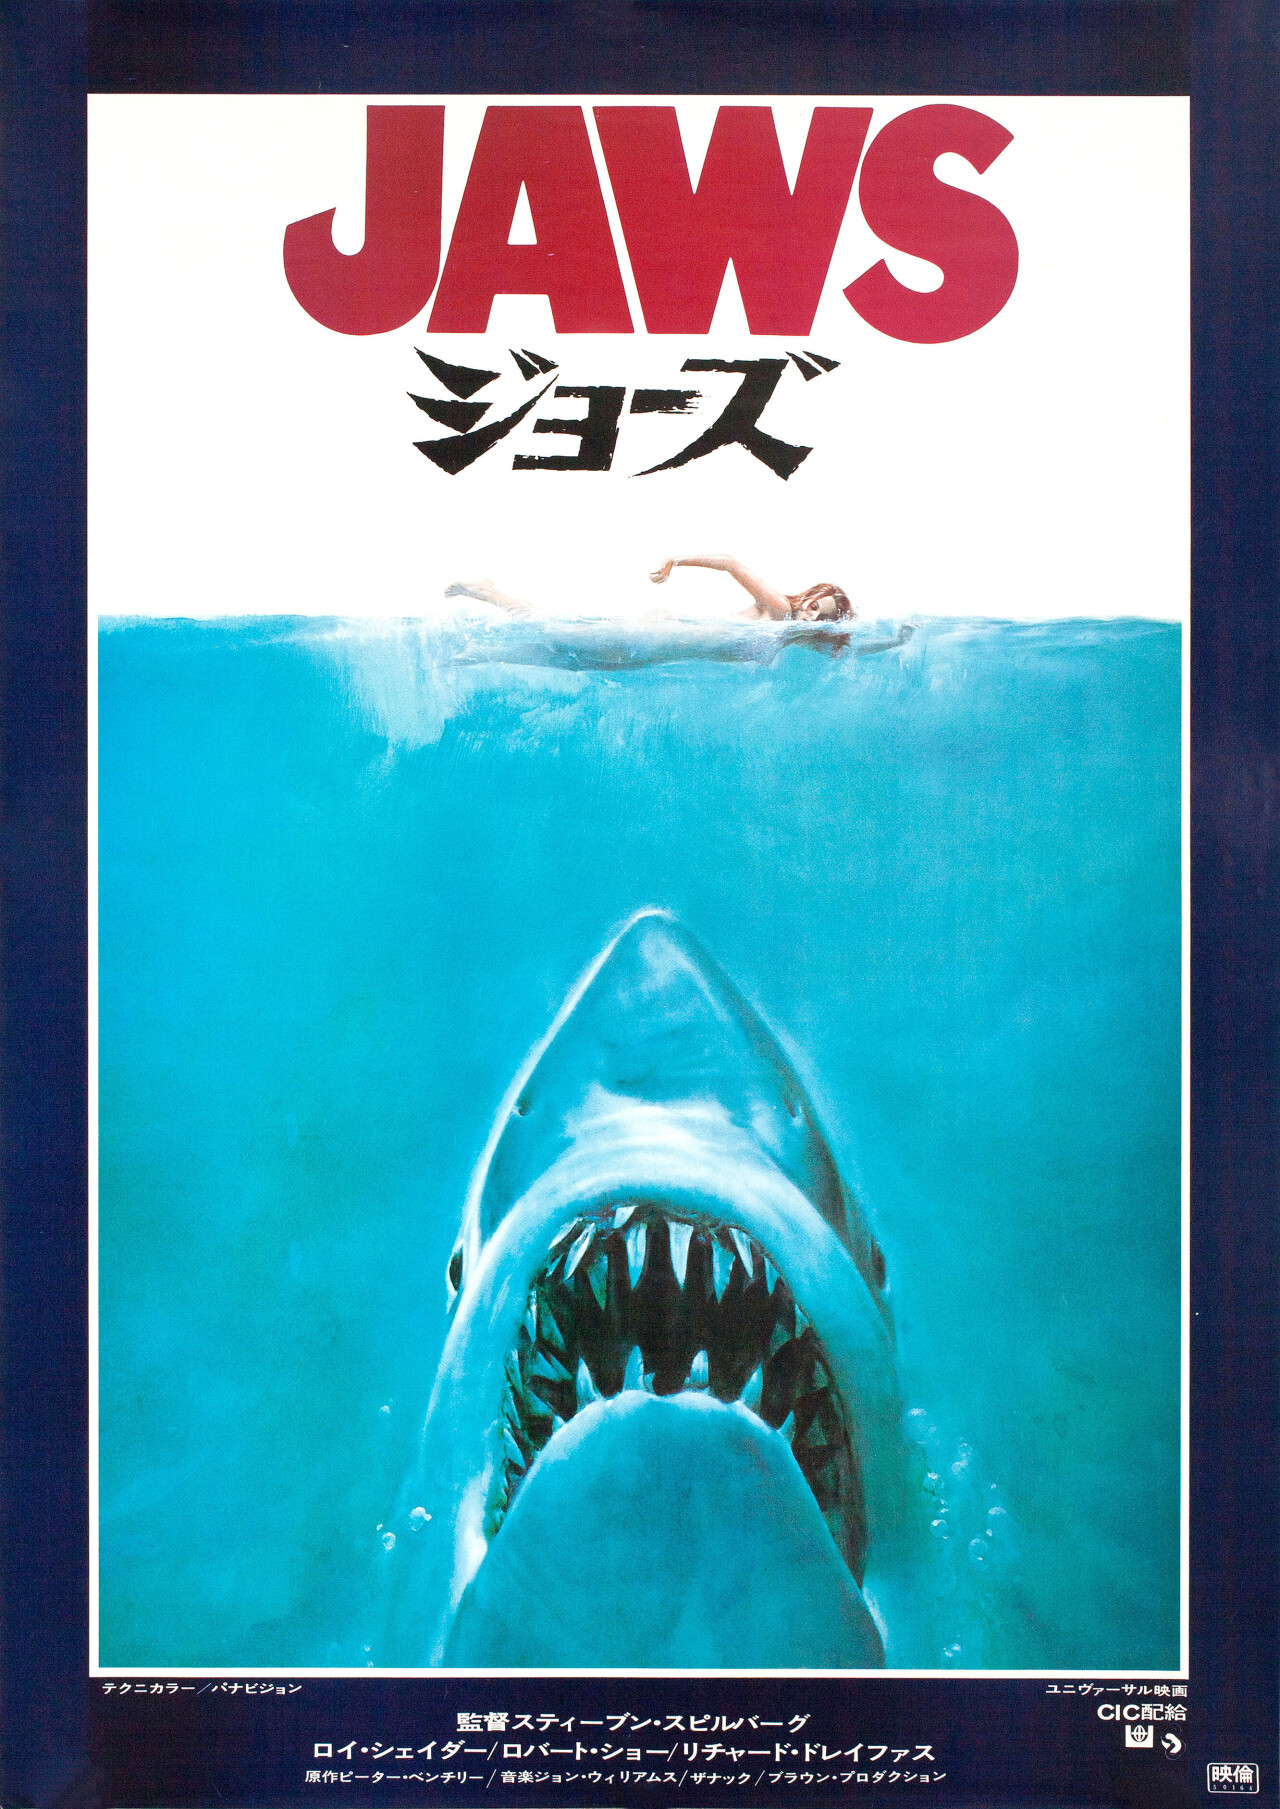 Челюсти (Jaws, 1975), режиссёр Стивен Спилберг, минималистичный постер к фильму (Япония, 1975 год)